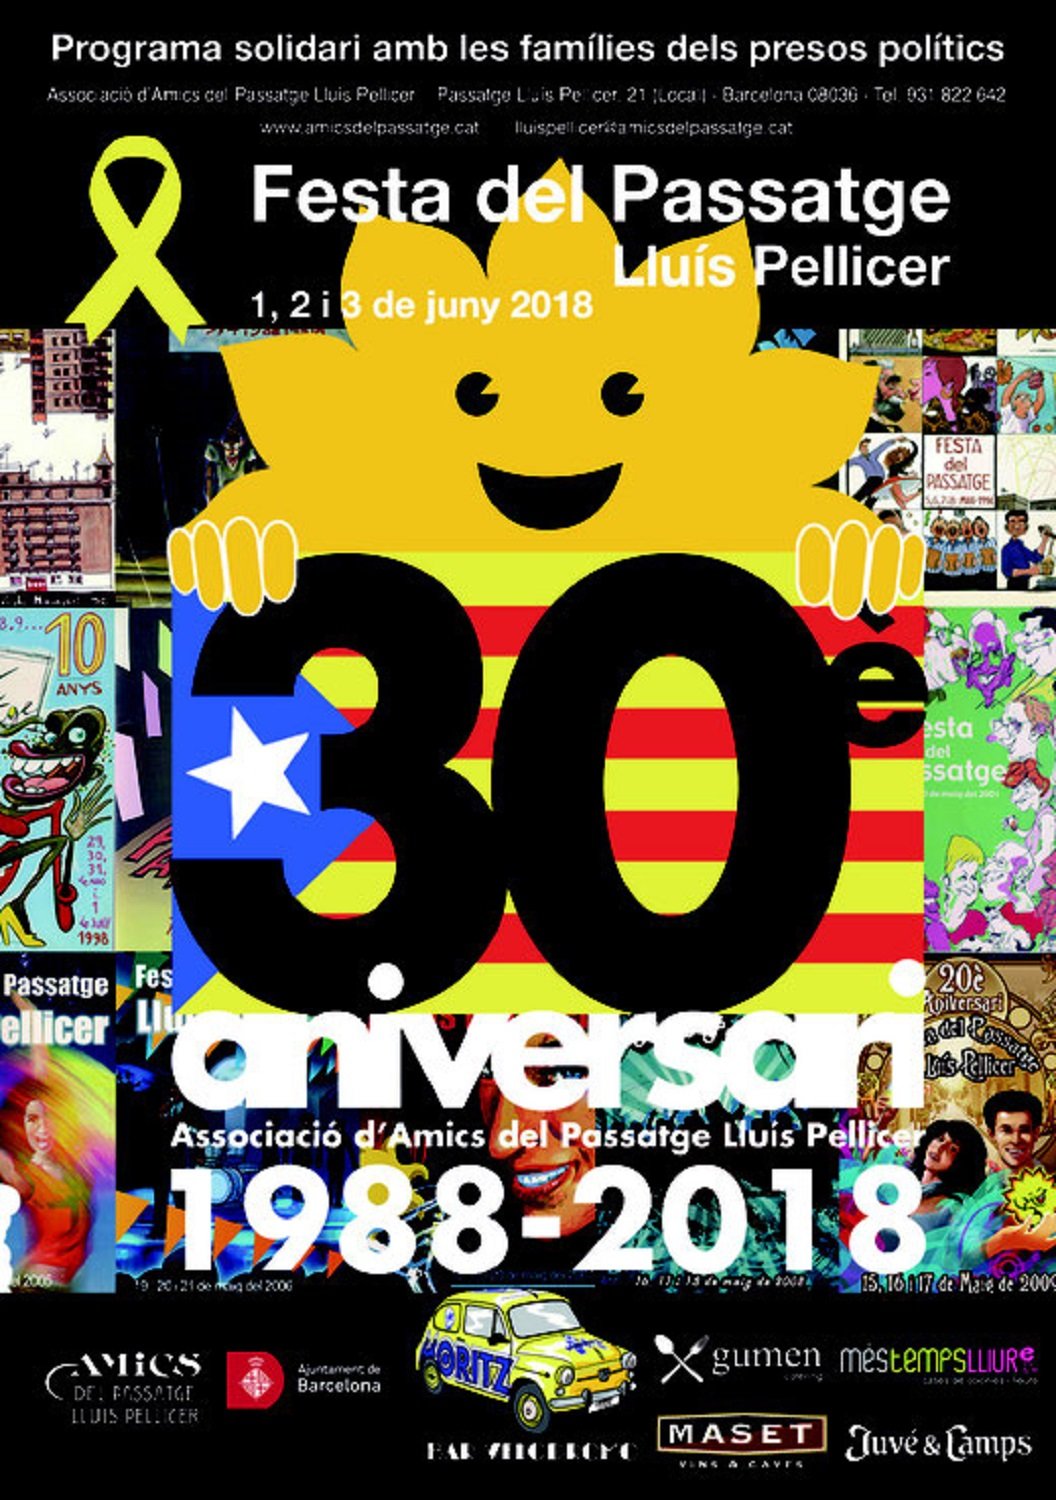 L'Associació d'Amics del Passatge Lluís Pellicer celebra la seva 30ena festa major